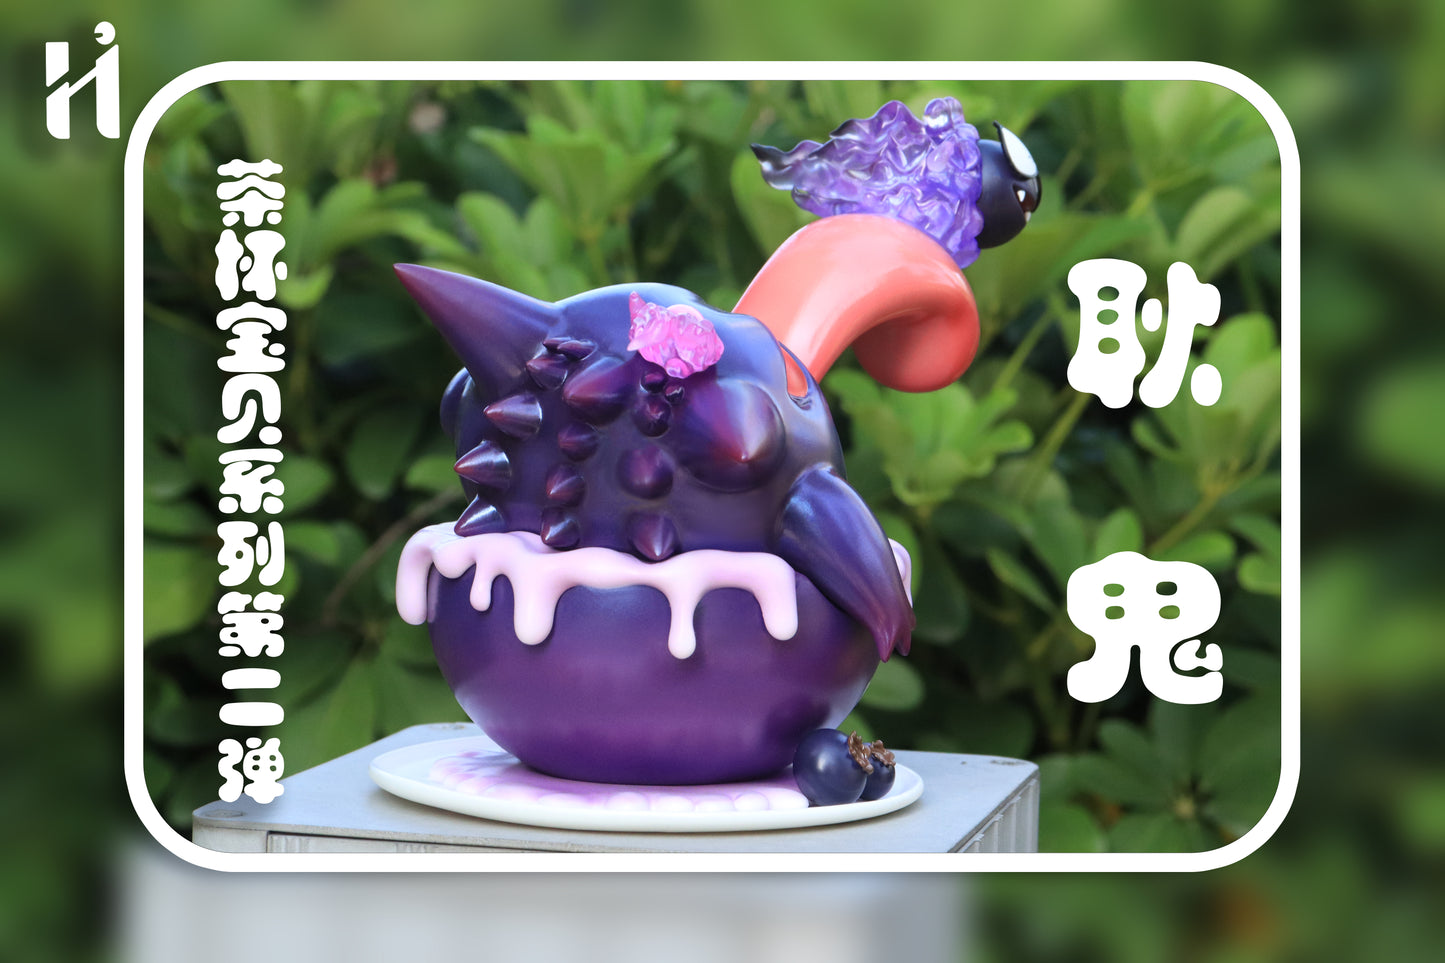 [PREORDER CLOSED] Mini Statue [HIHI Studio] - Teacup Series Gengar